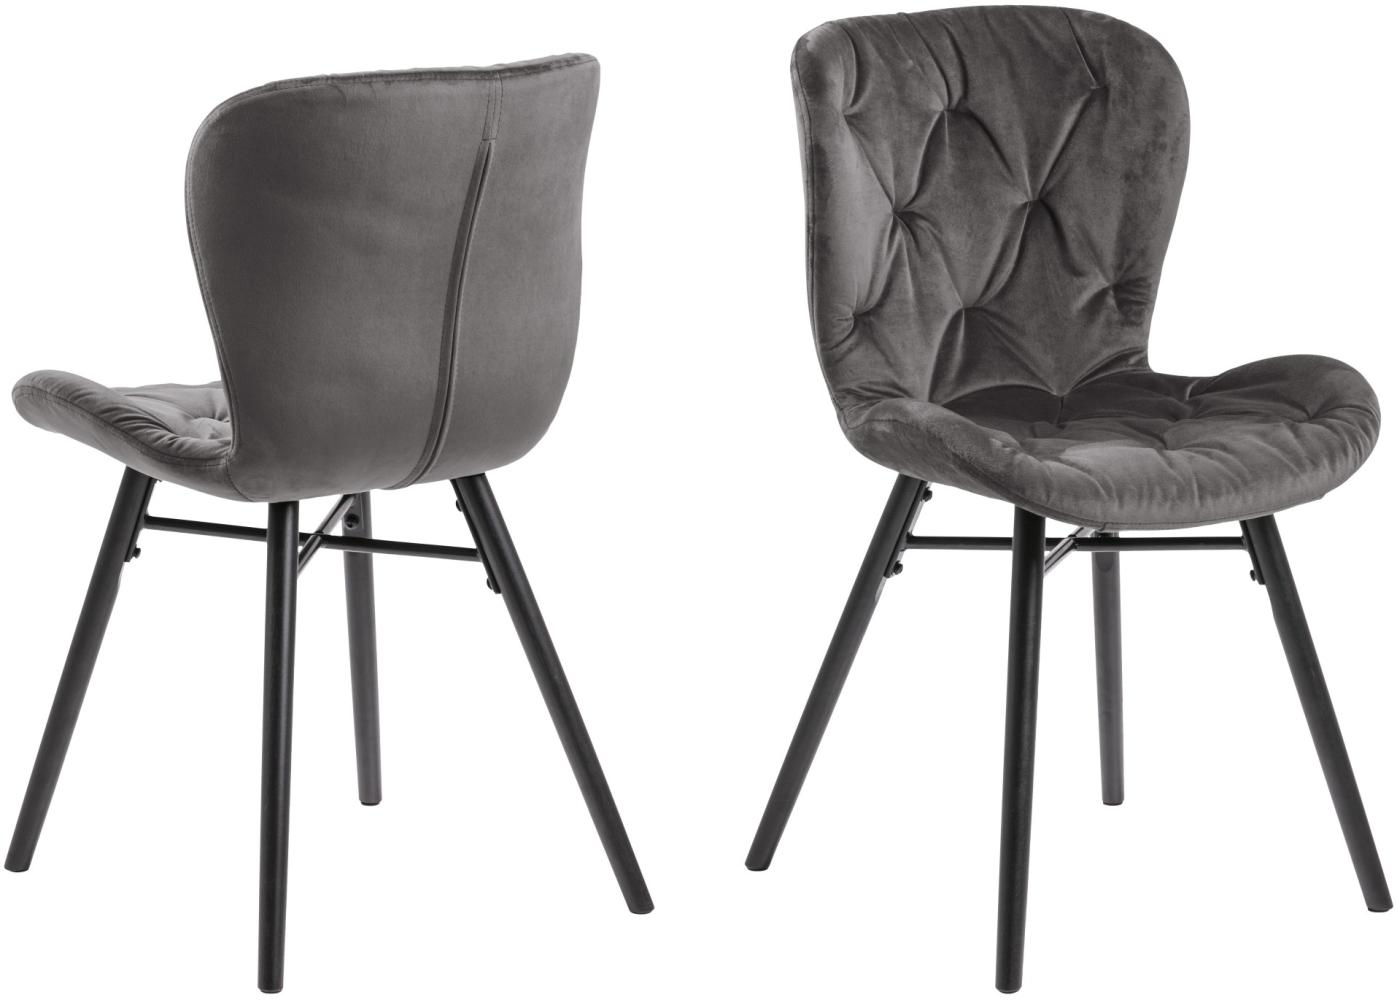 2x Bali Esszimmerstuhl grau Stuhl Set Esszimmer Stühle Möbel Küchenstuhl Küche Bild 1